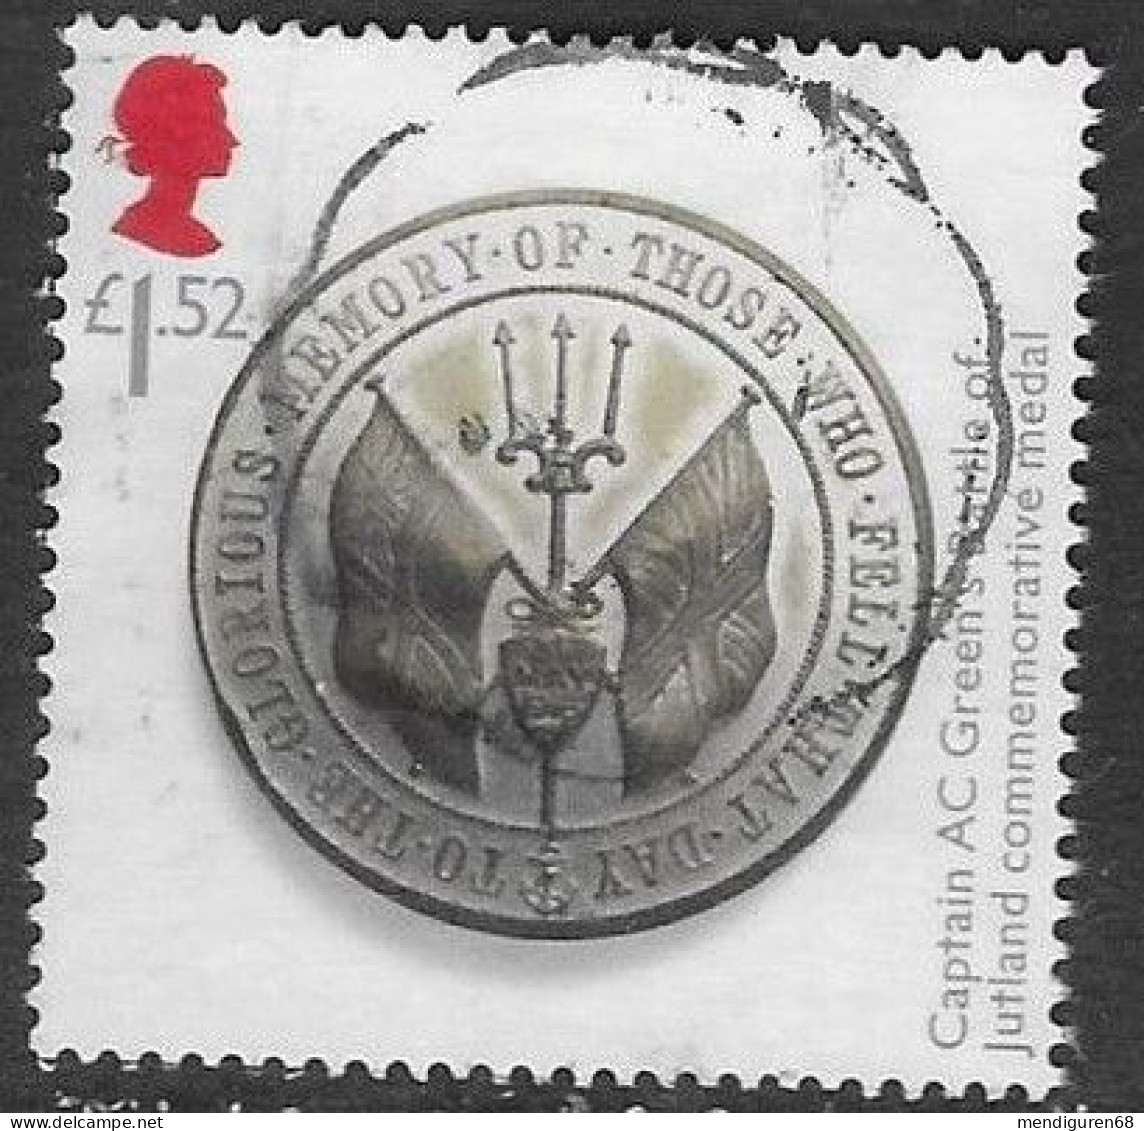 GROSSBRITANNIEN GRANDE BRETAGNE GB 2016 GREAT WAR:CAPTAIN GREEN'S BATTLE OF JUTLAND MEDAL £1.52 SG 3843 MI 3898 YT 4310 - Used Stamps